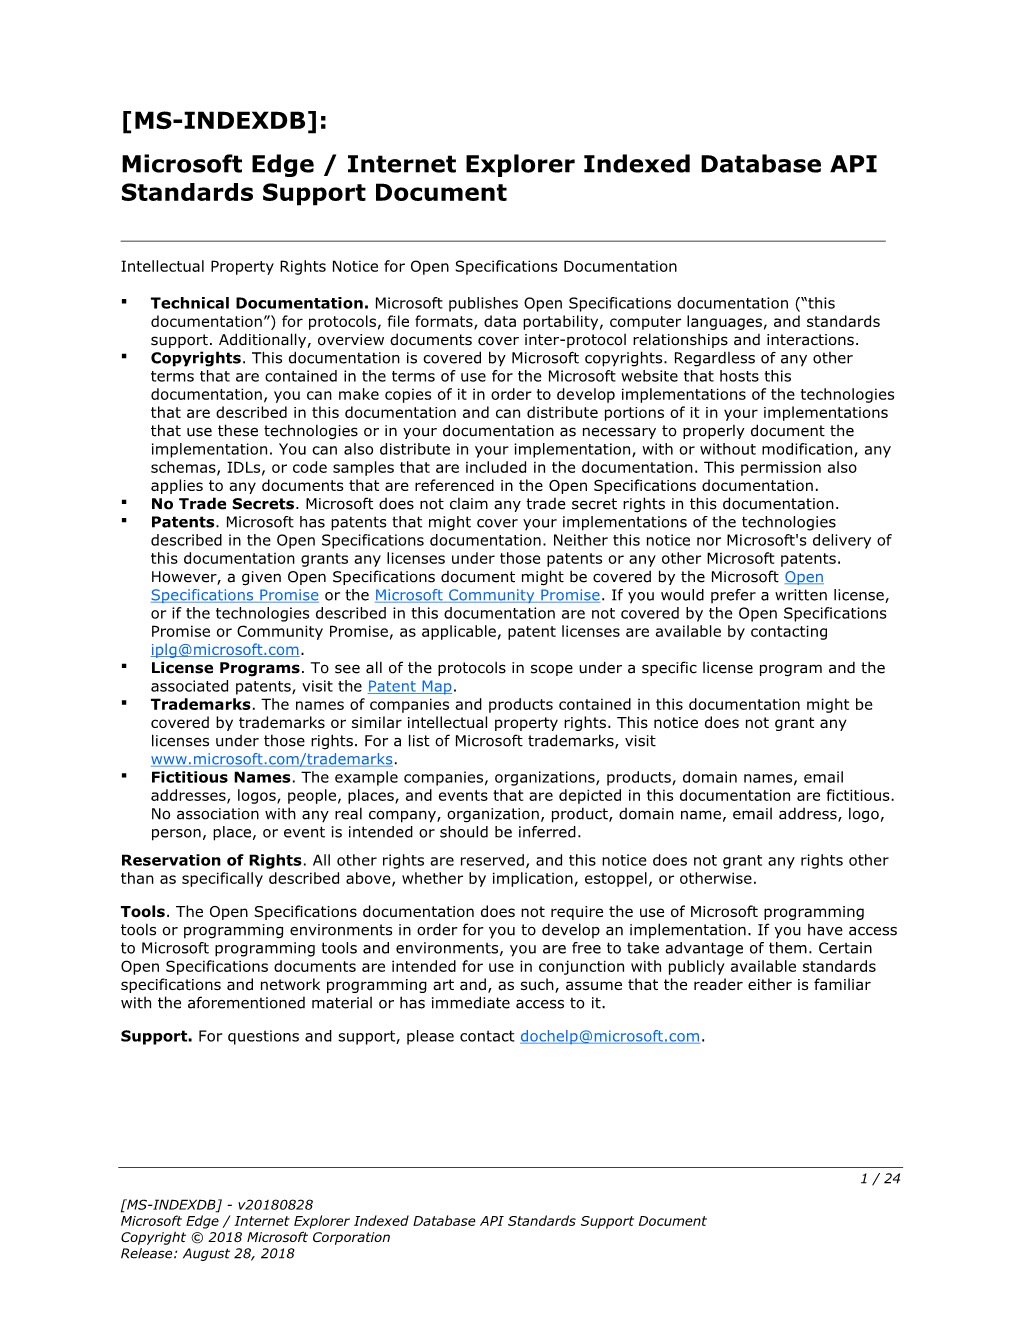 MS-INDEXDB]: Microsoft Edge / Internet Explorer Indexed Database API Standards Support Document